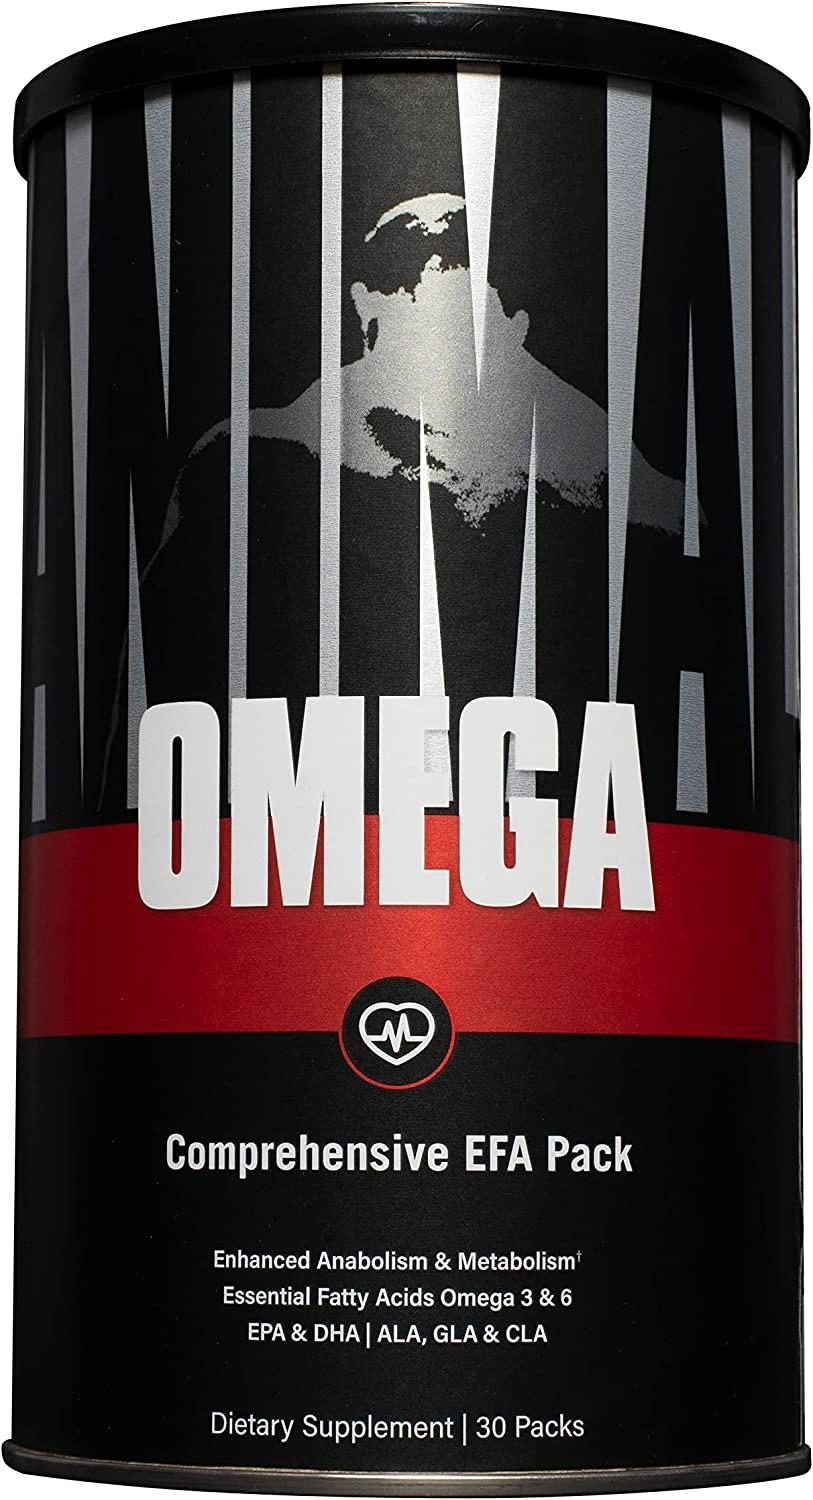 Animal Omega - Omega 3 6 Supplement - 30 Adet